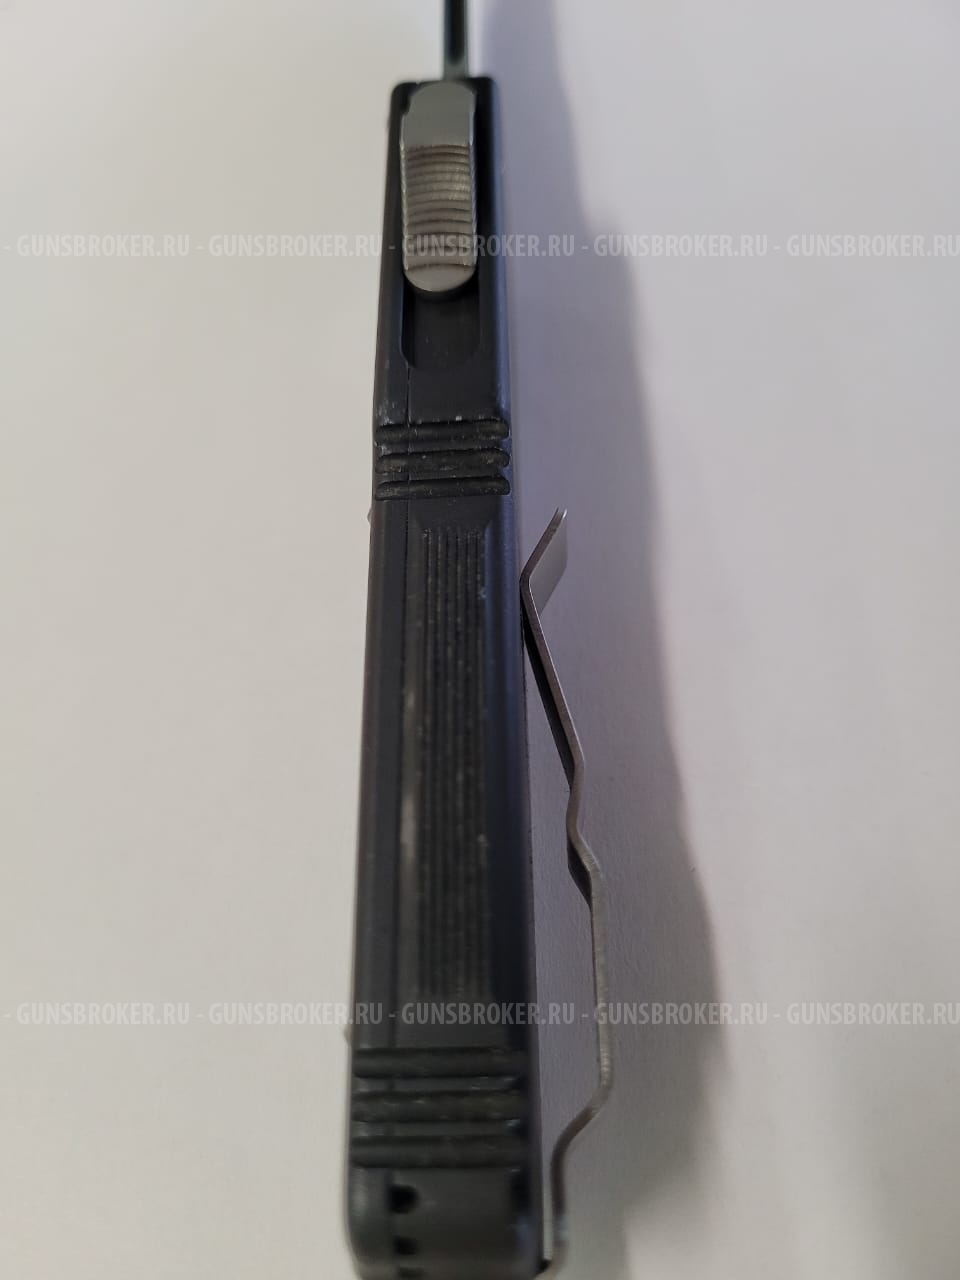 Автоматический нож Microtech Executive Scarab Black 176-1